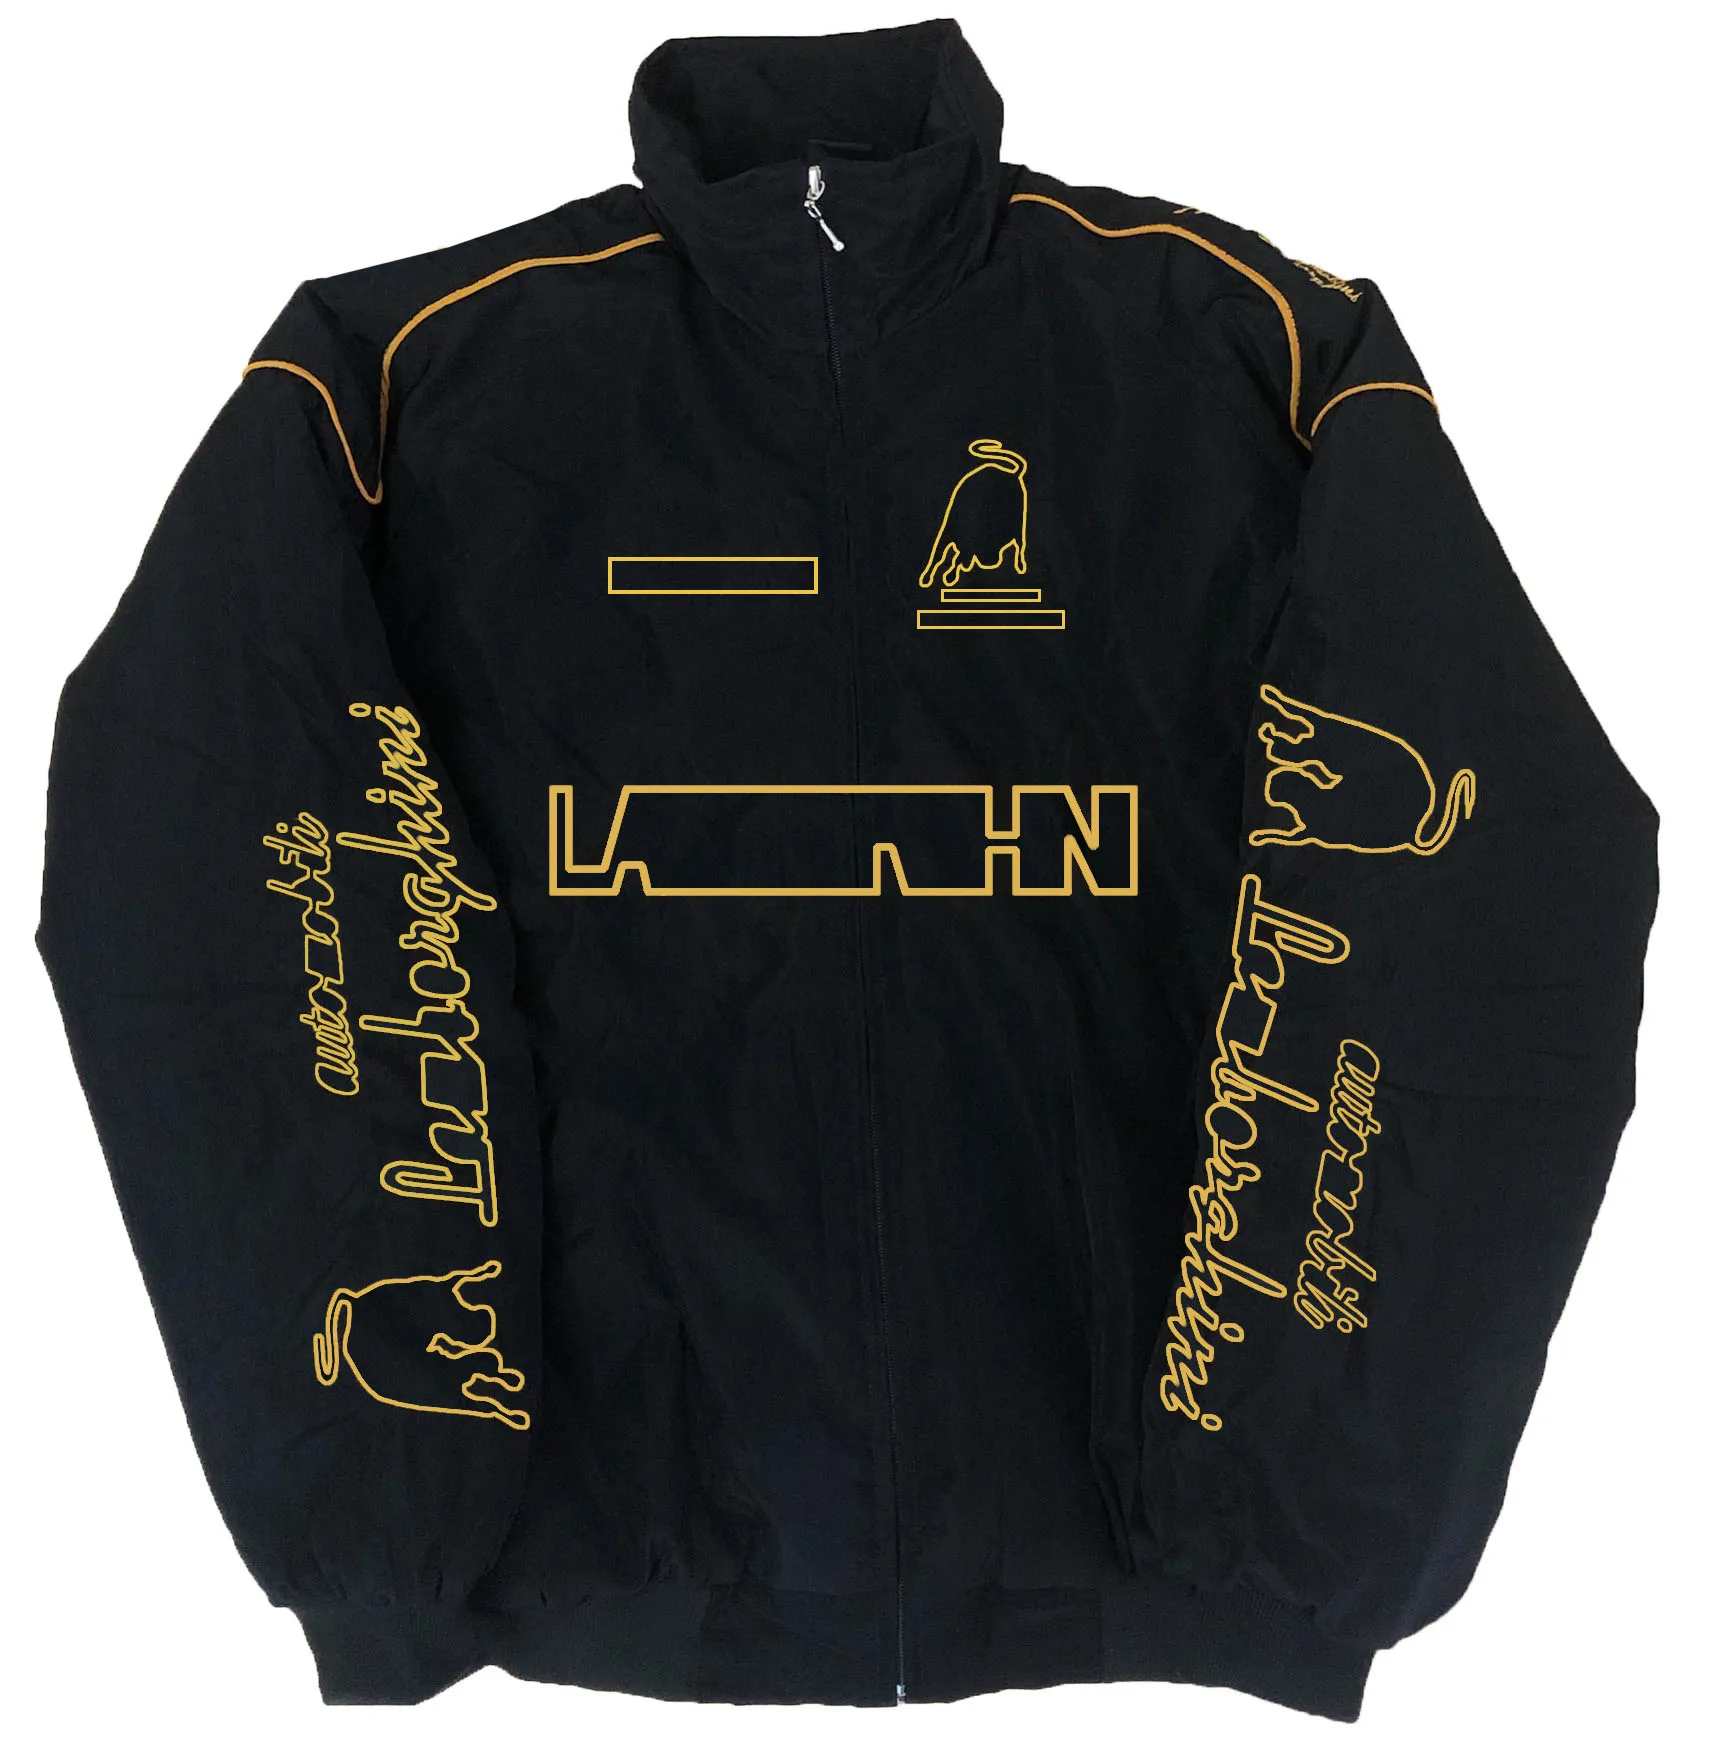 F1ジャケットカーロゴジャケット2021新しいカジュアルレーシングスーツセーターフォーミュラワンジャケット風の暖かさと風の装具